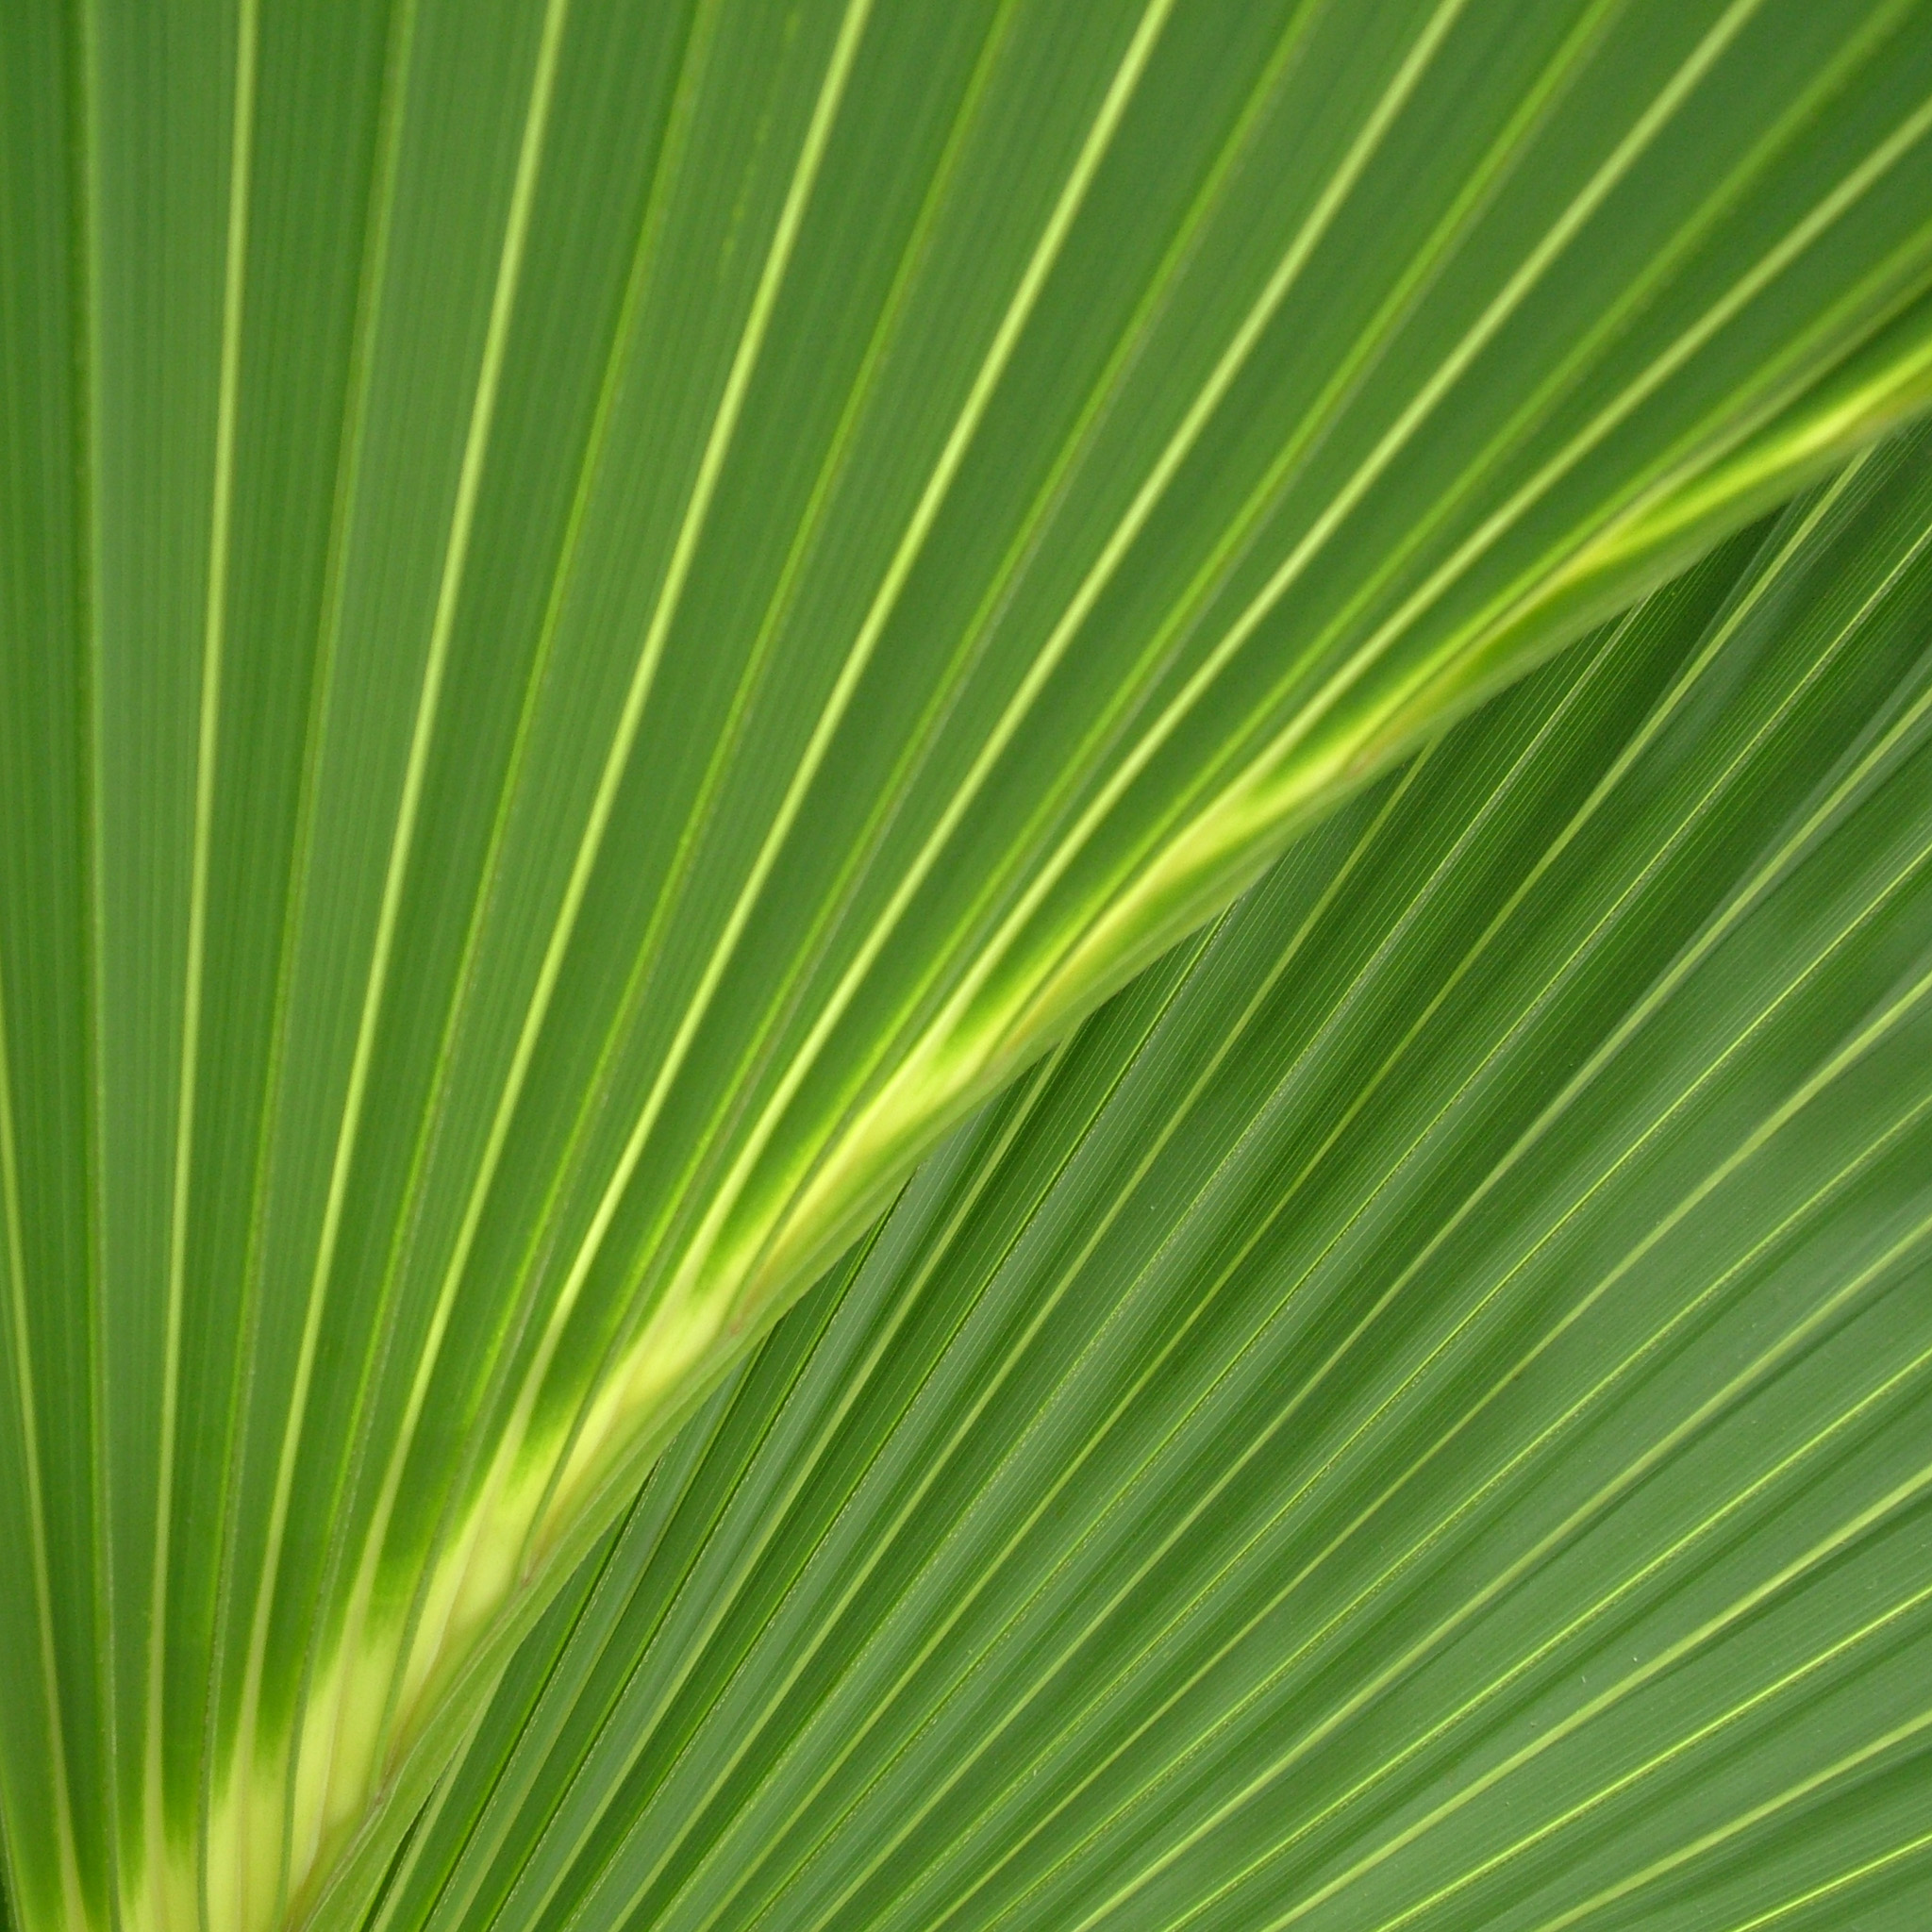 riv - palm leaf texture ipad wallpaper